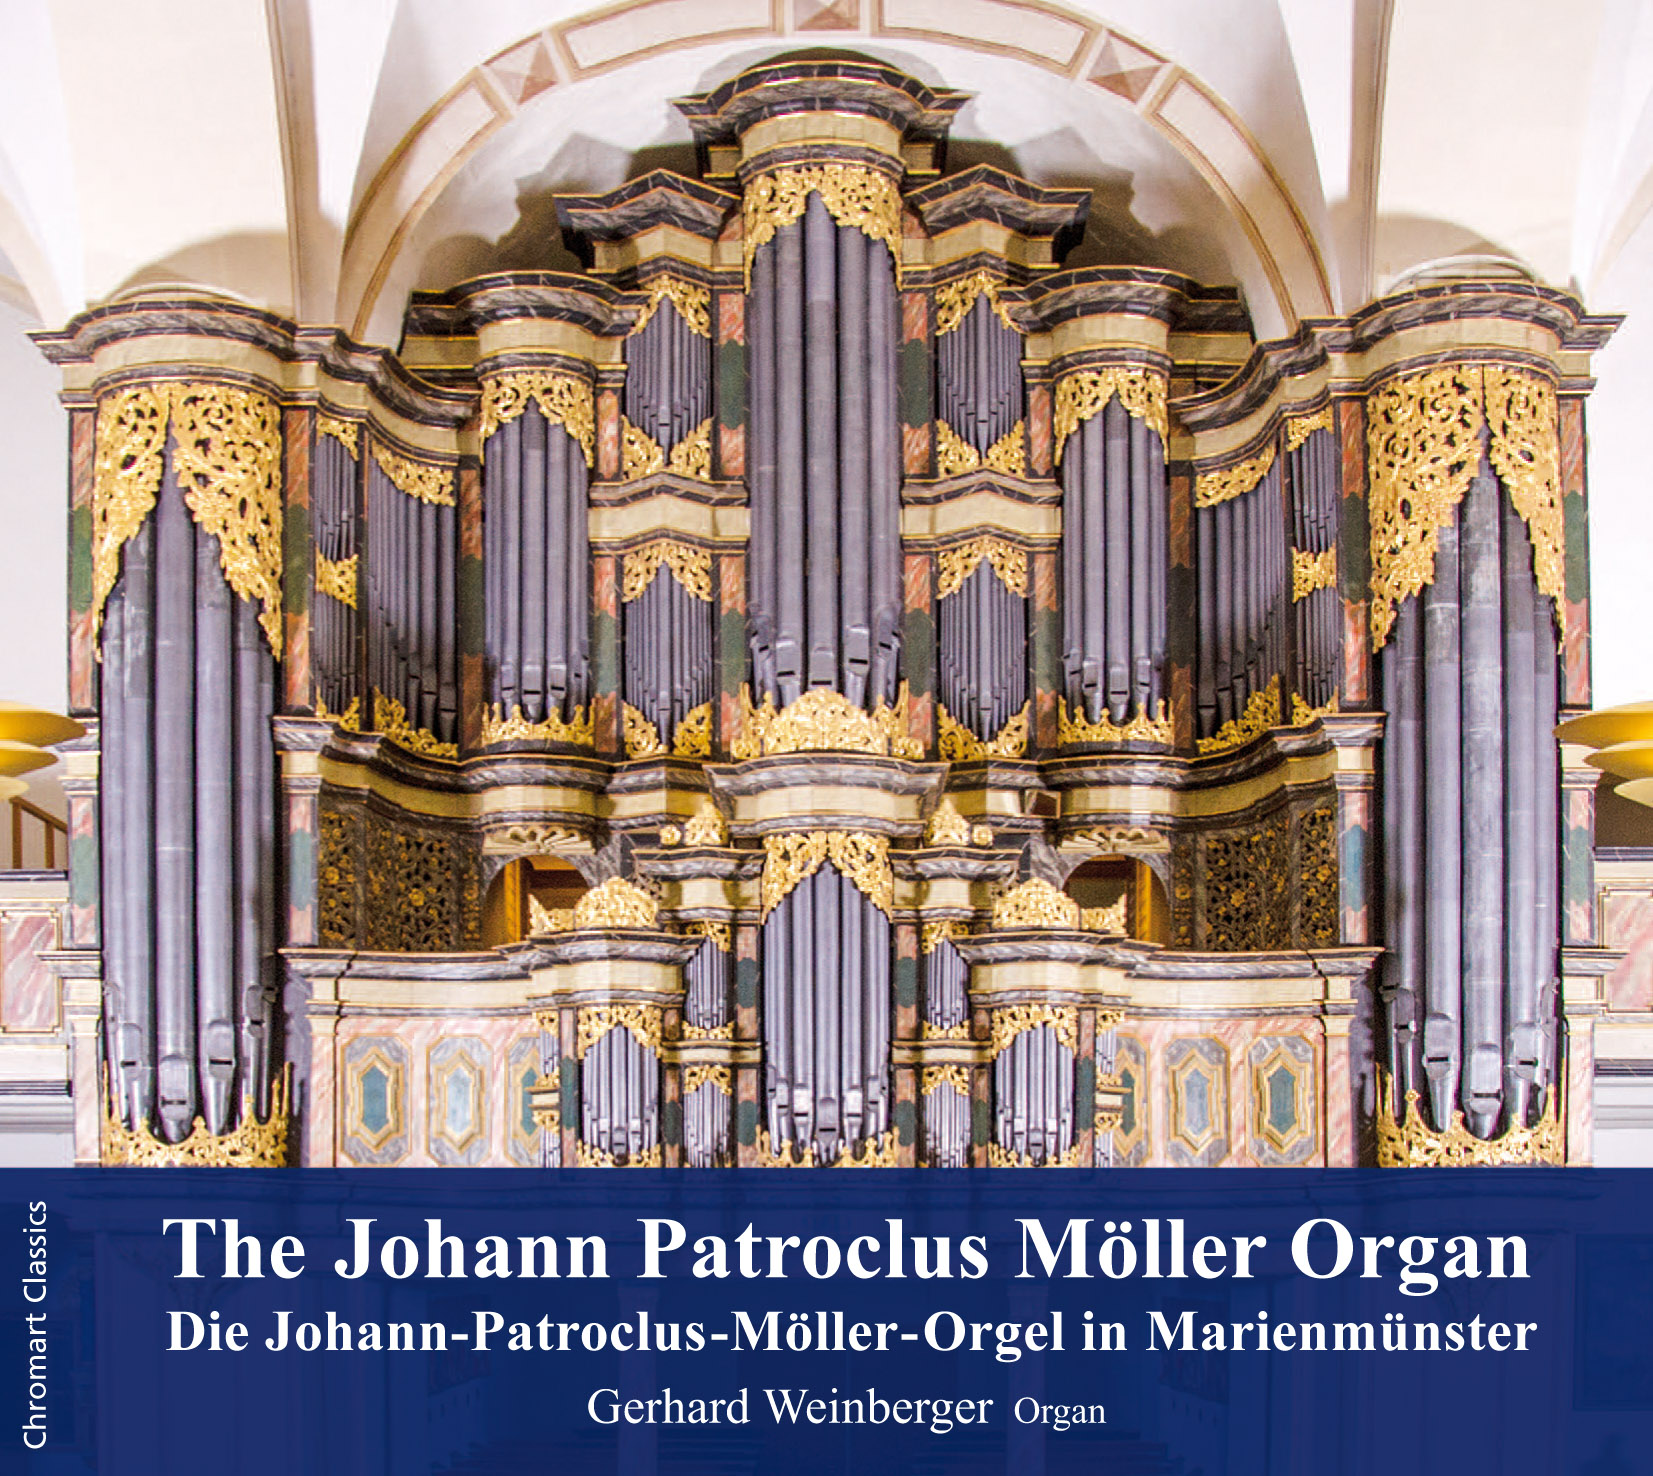 The J. P. Möller Organ in Marienmünster